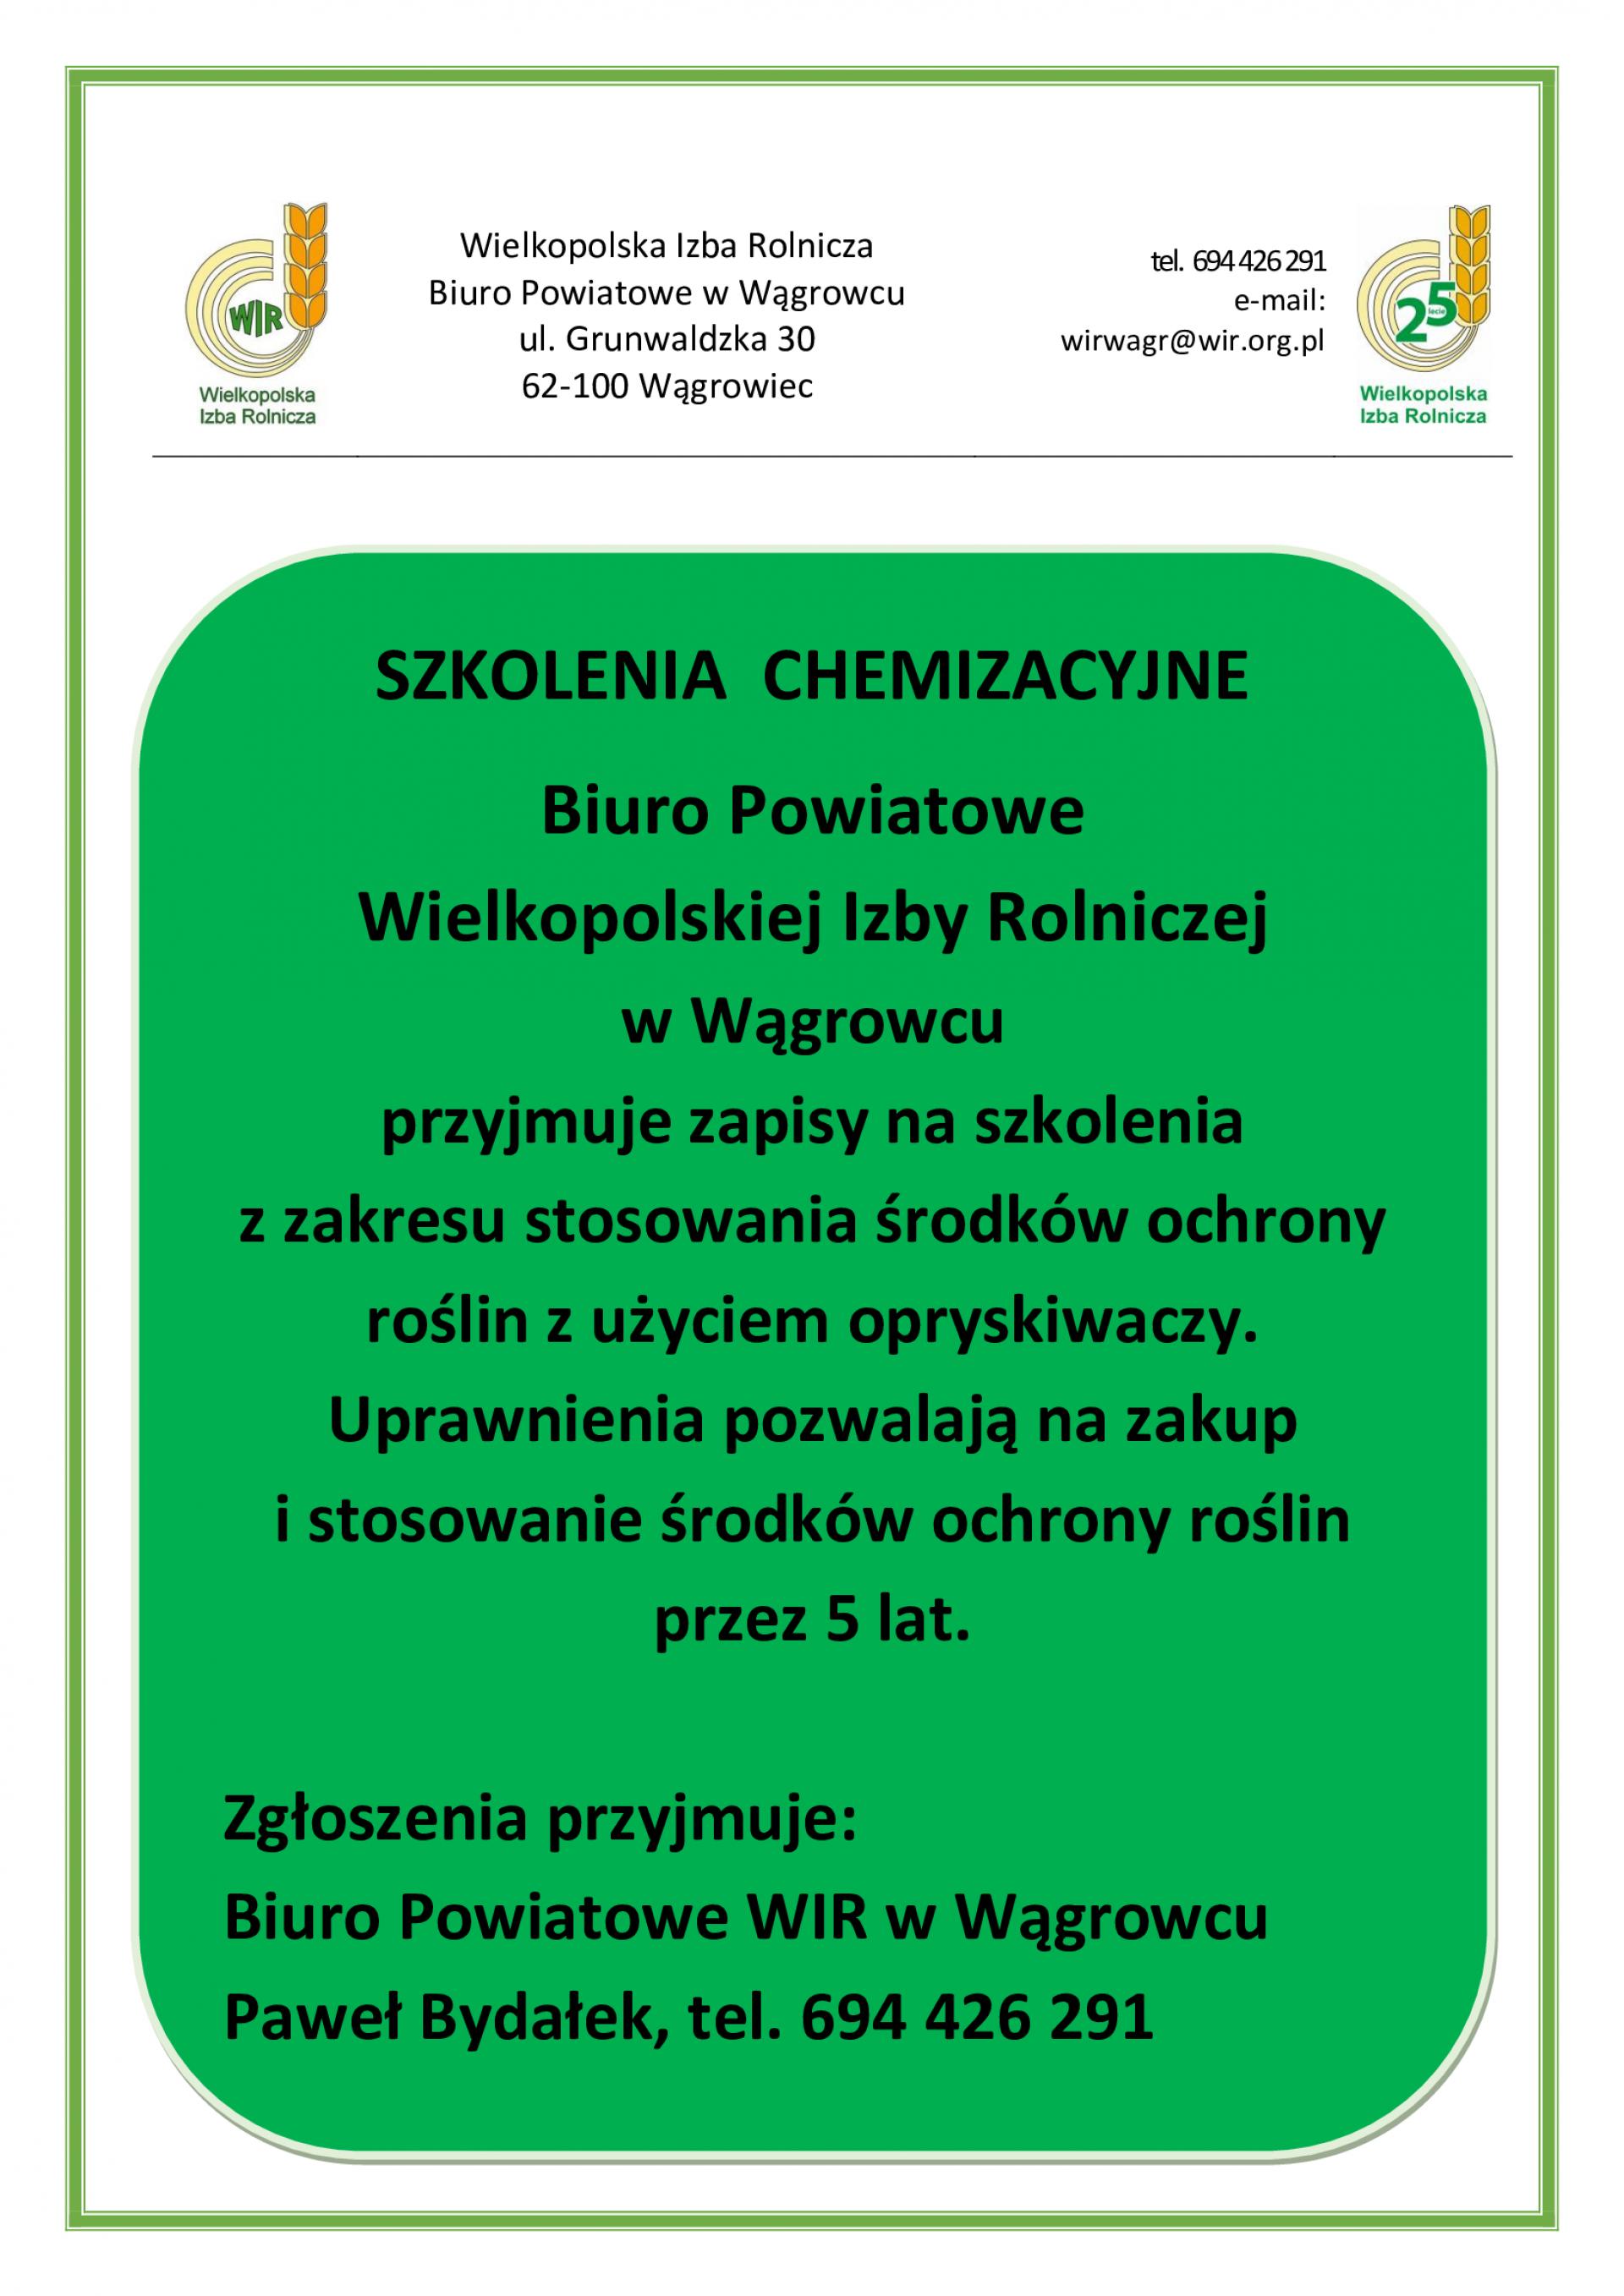 WIR informuje: zapisy na szkolenia chemizacyjne